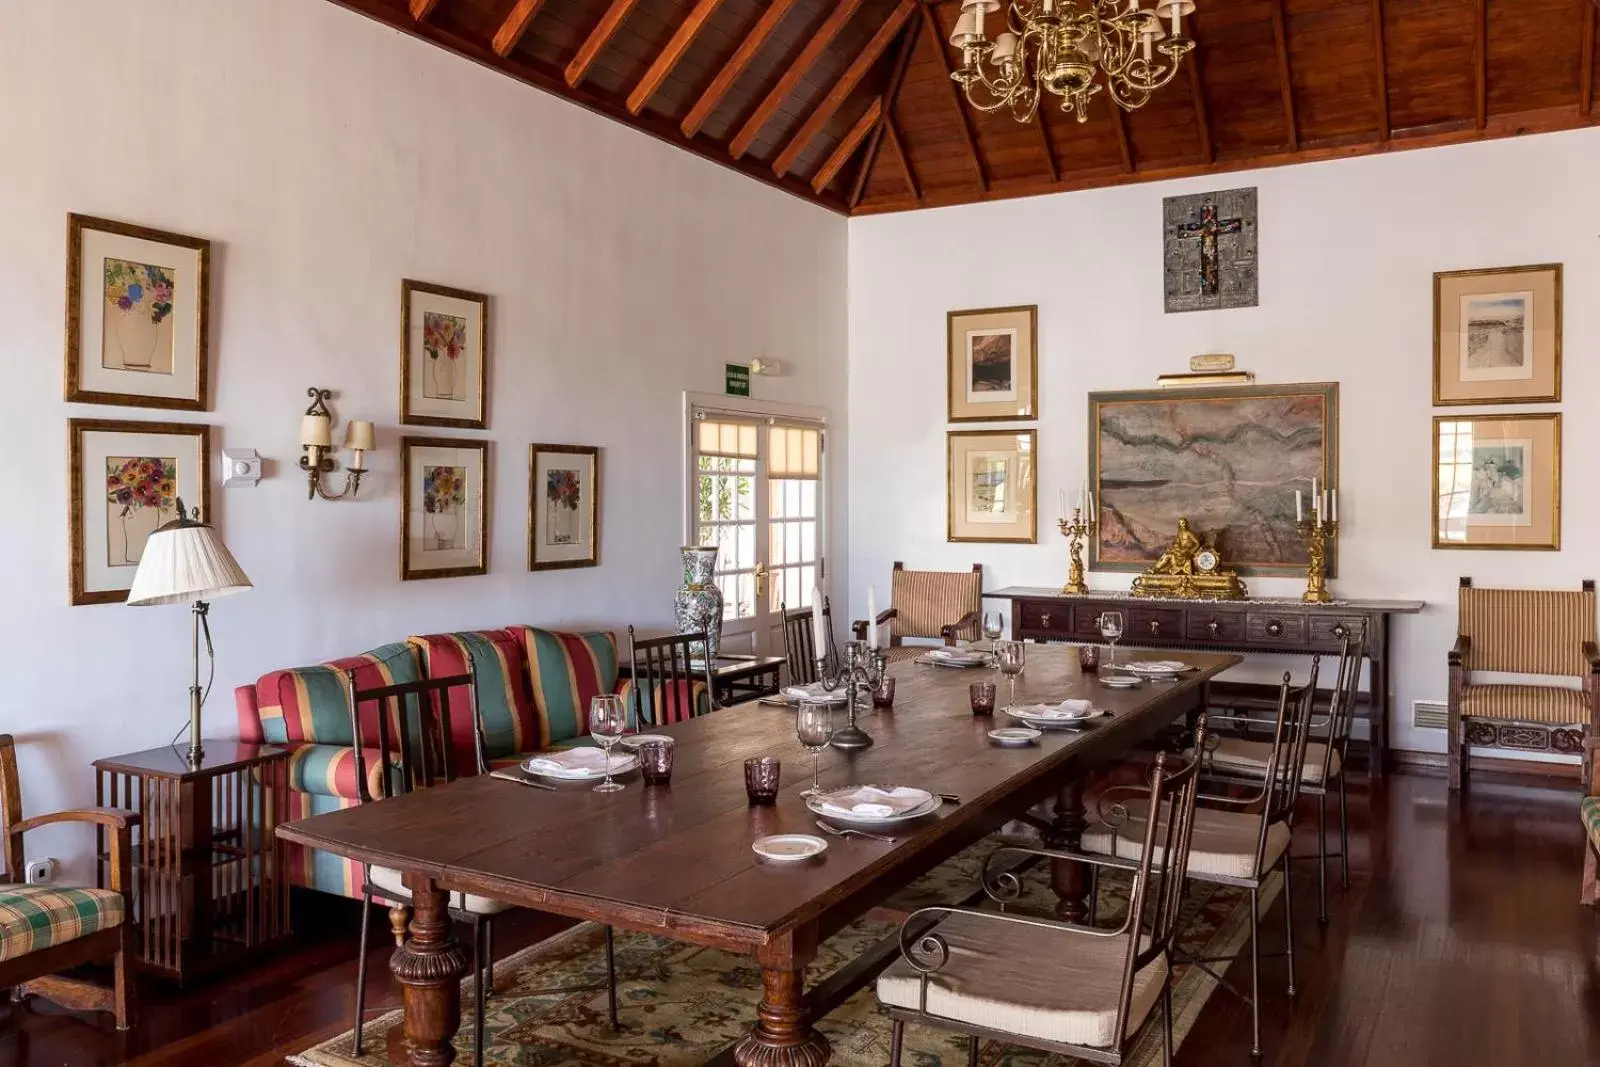 Banquet/Function facilities, Restaurant/Places to Eat in Parador de La Palma